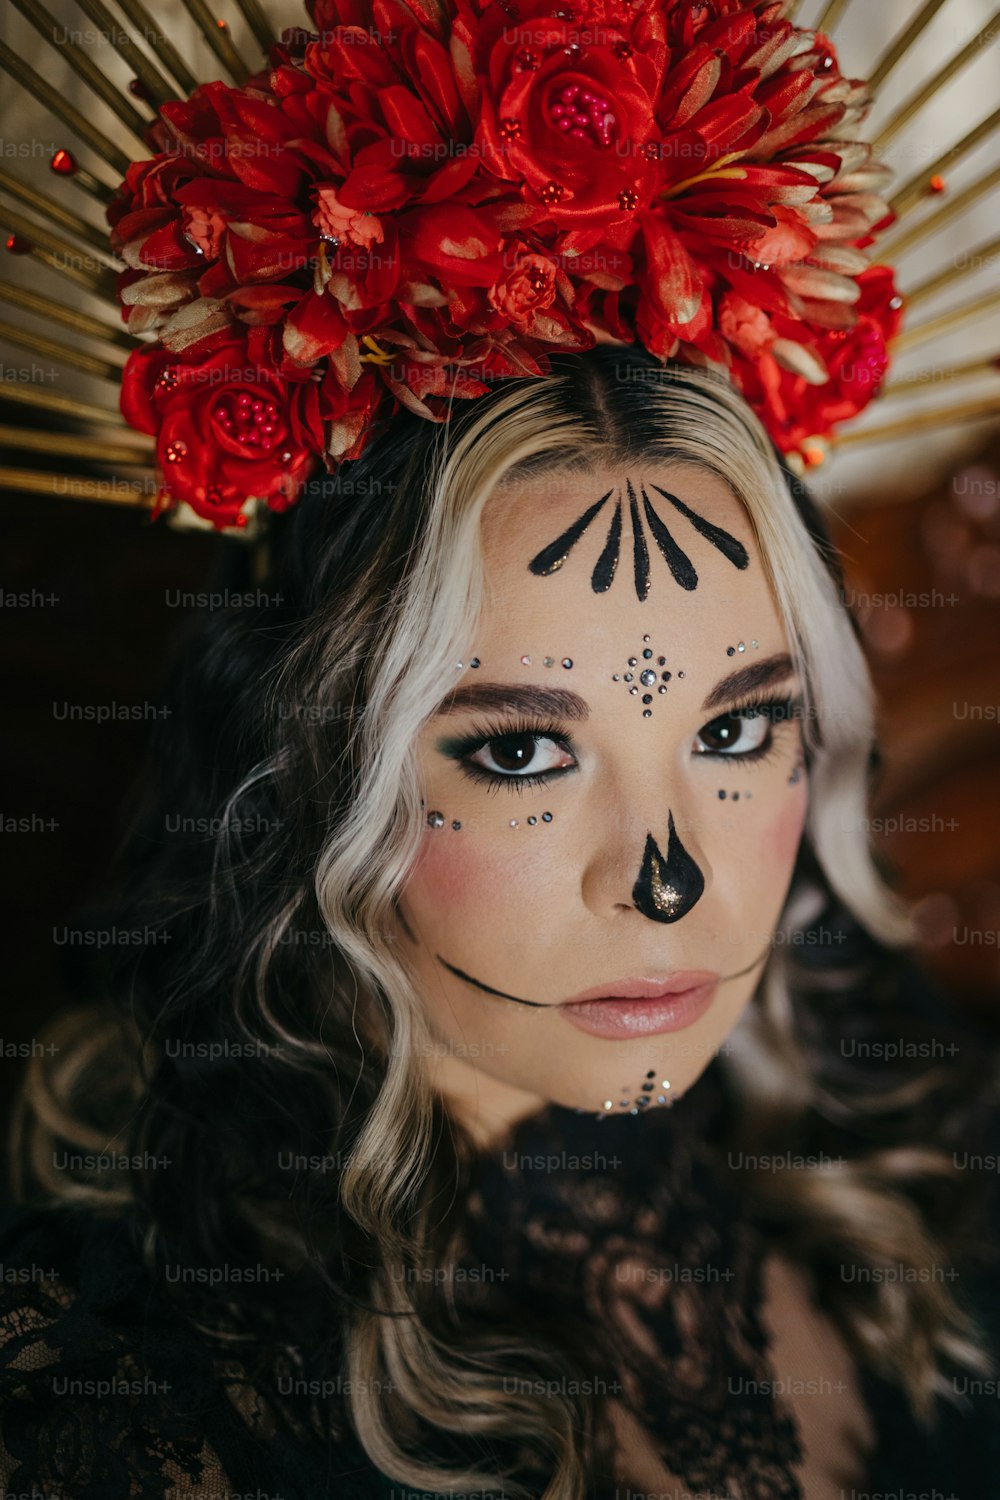 Una mujer con una pintura facial en blanco y negro y flores rojas en la cabeza